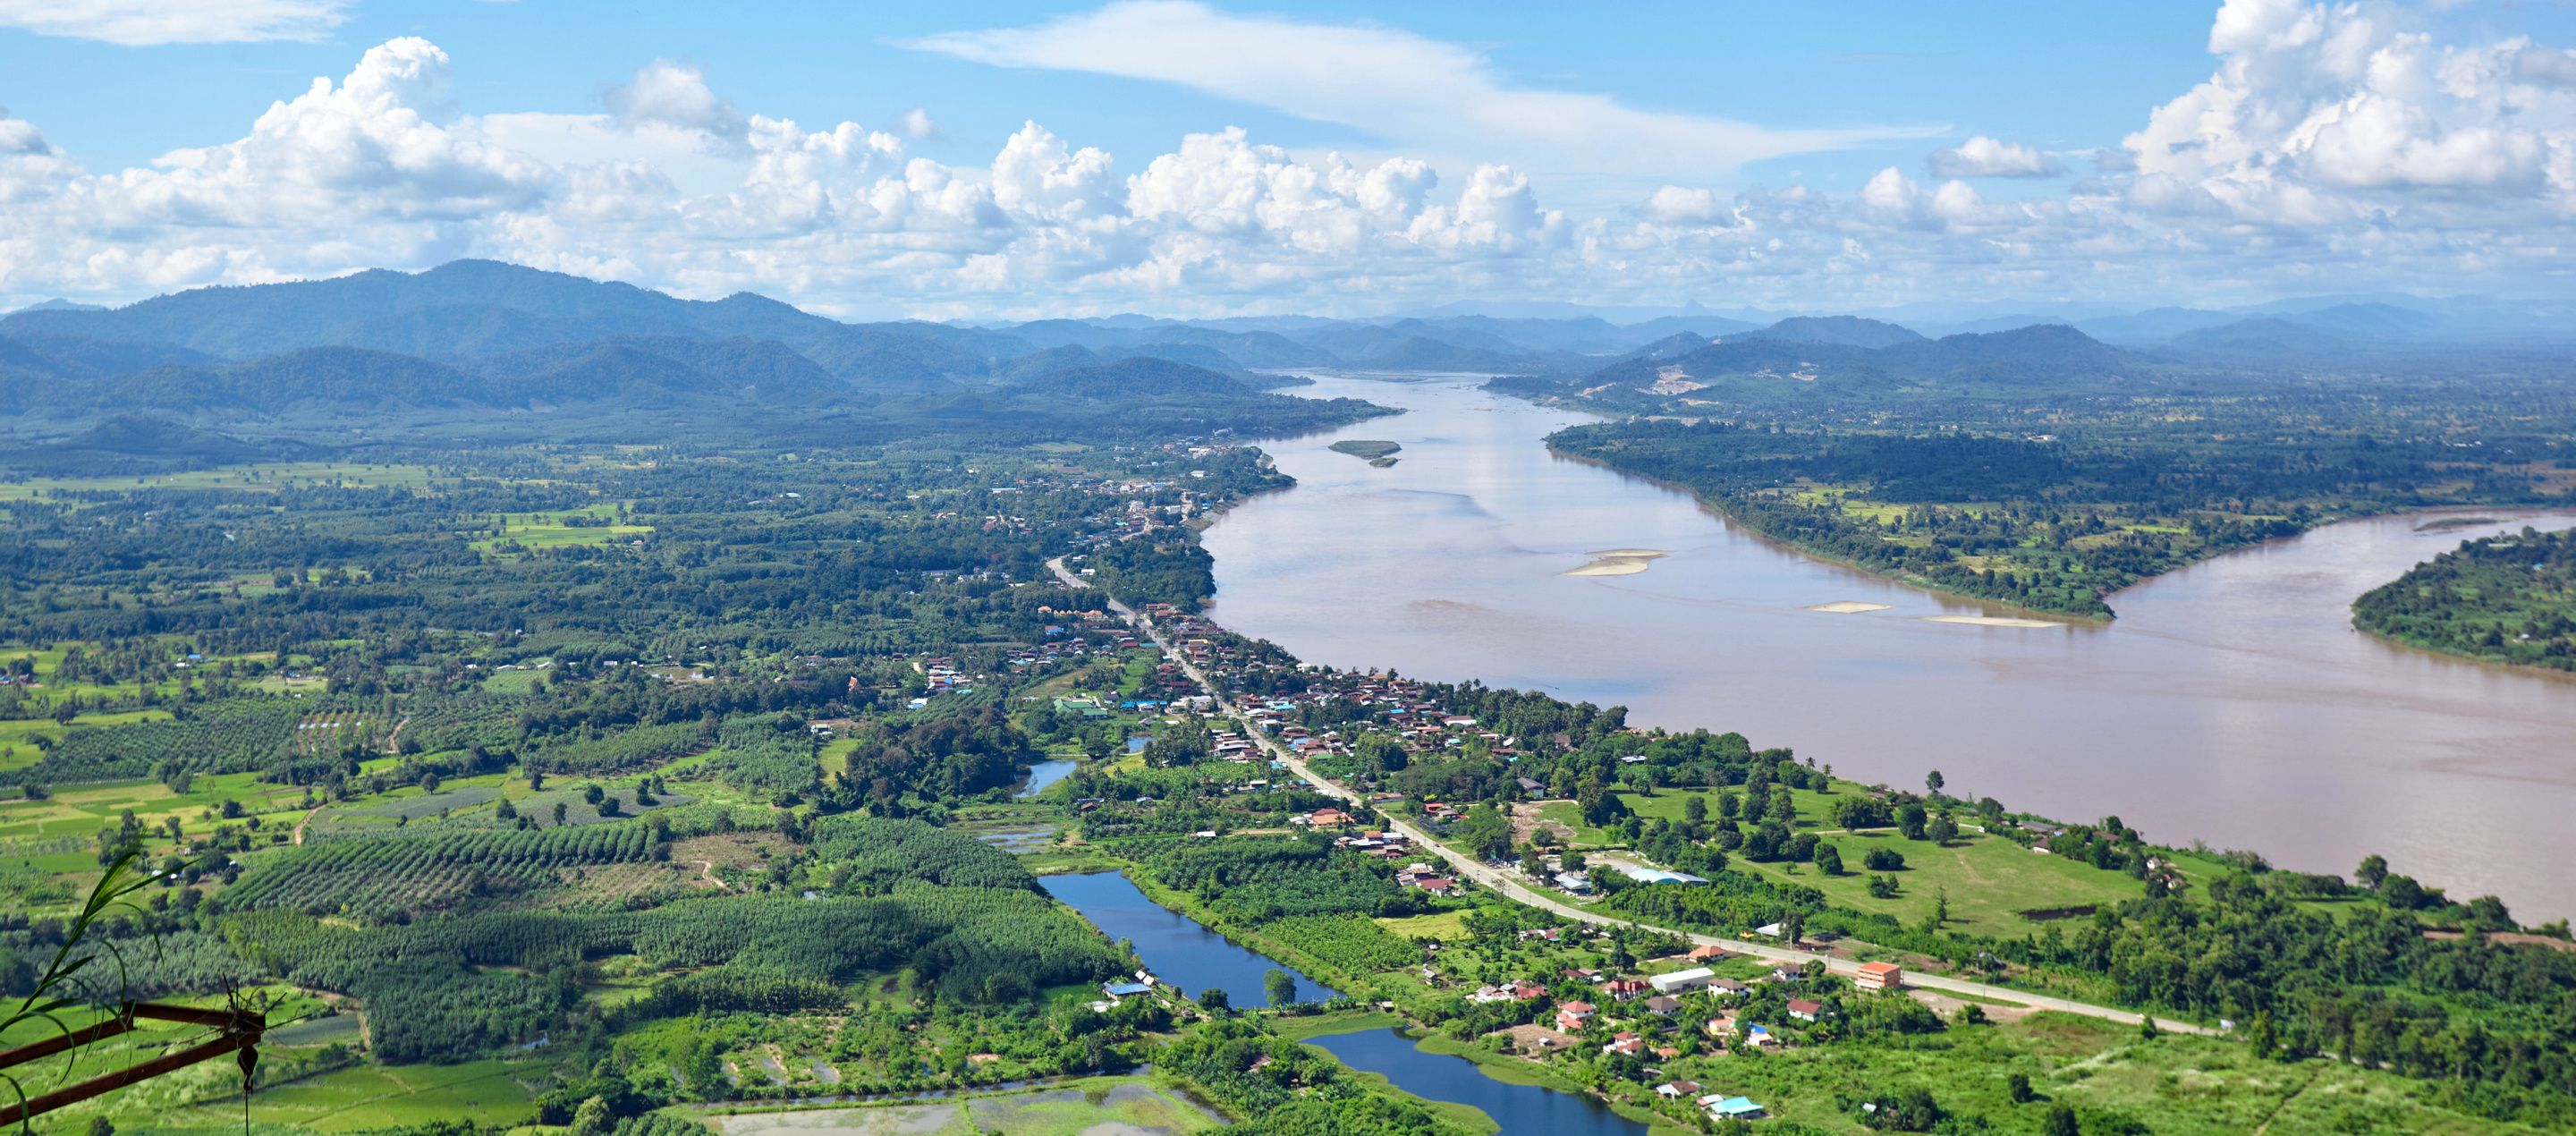 aerial view of chiang rai thailand with river running through lush farmland 